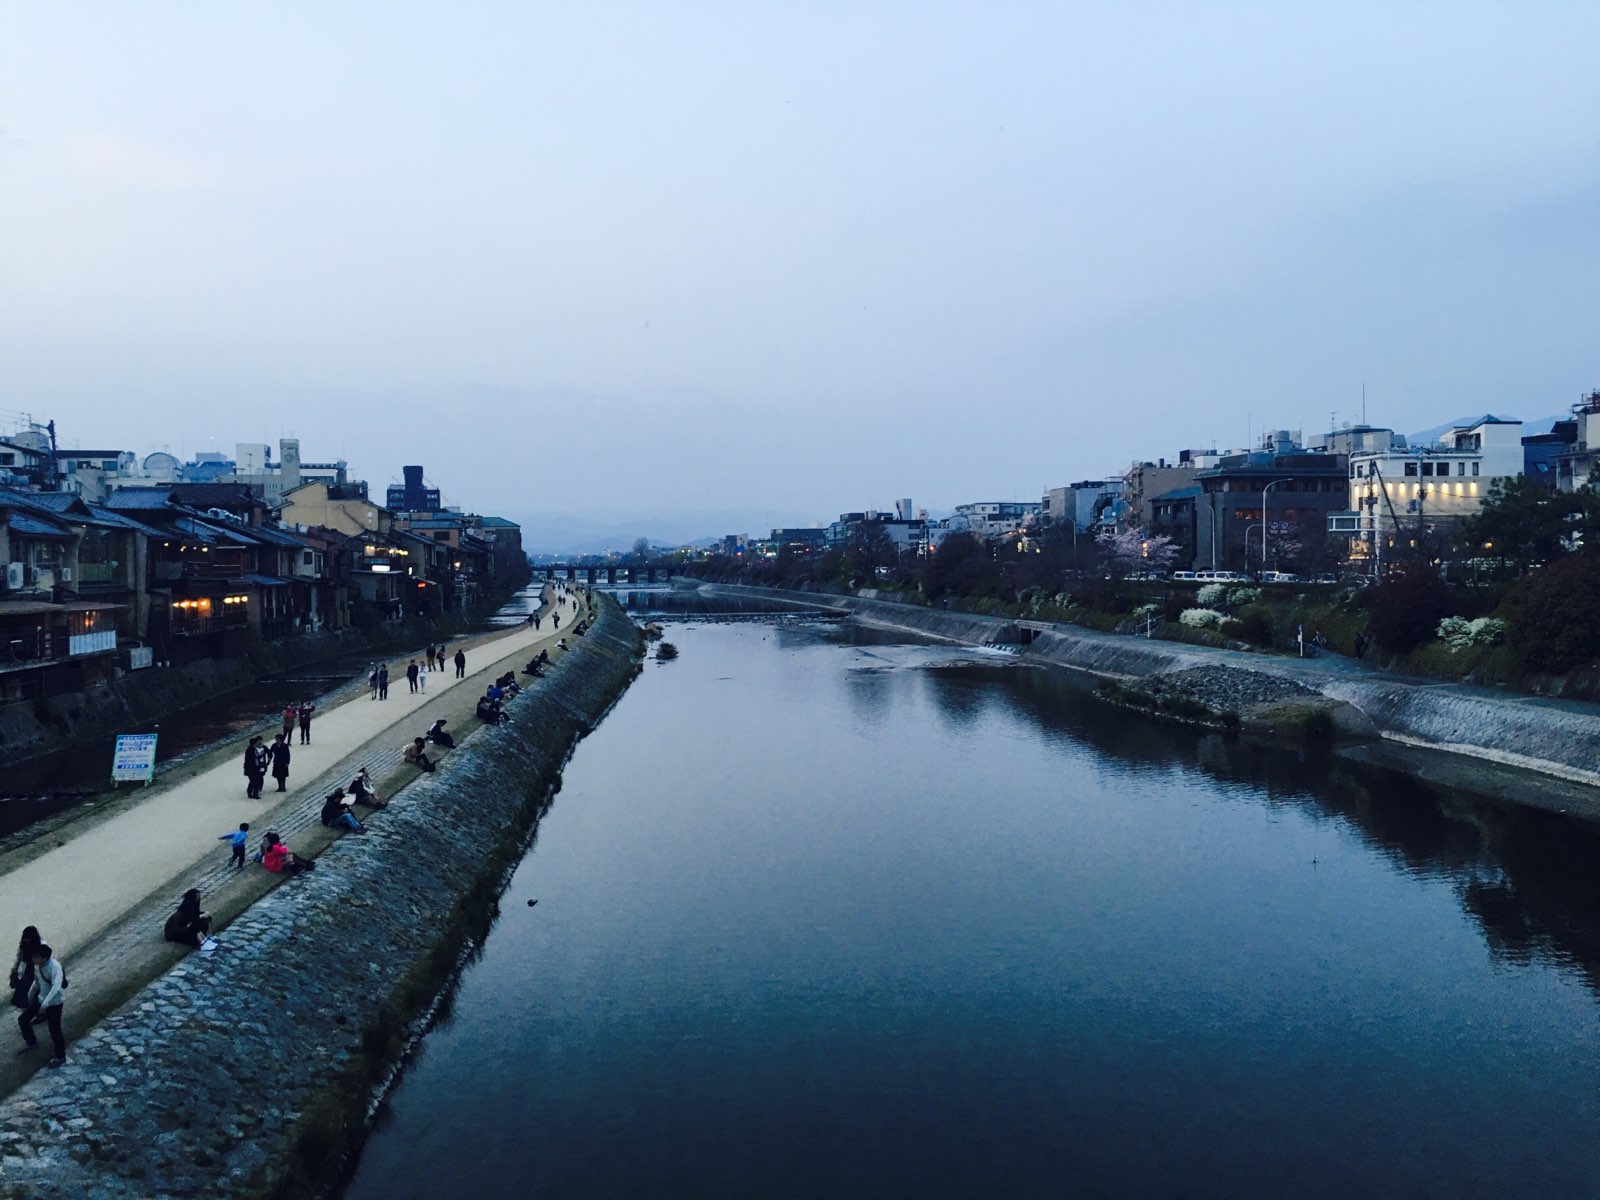 日暮时分走到鸭川，在桥上眺望时想到，日本动漫里的河岸，草地会蔓延至河床